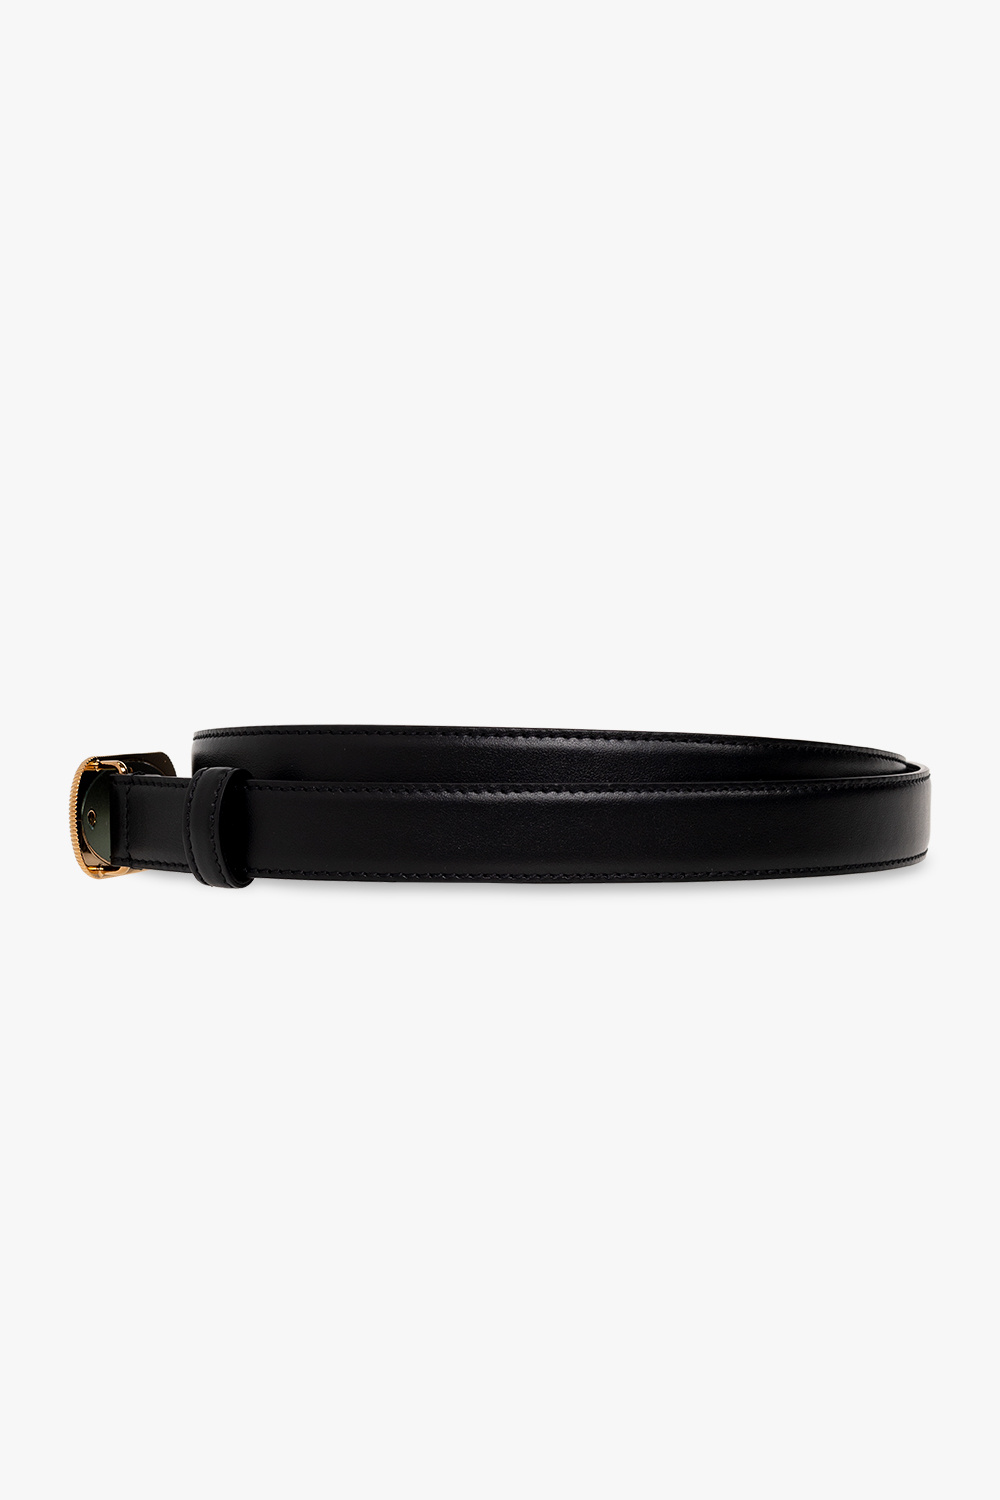 Versace Belt with logo | Men's Accessories | Vitkac